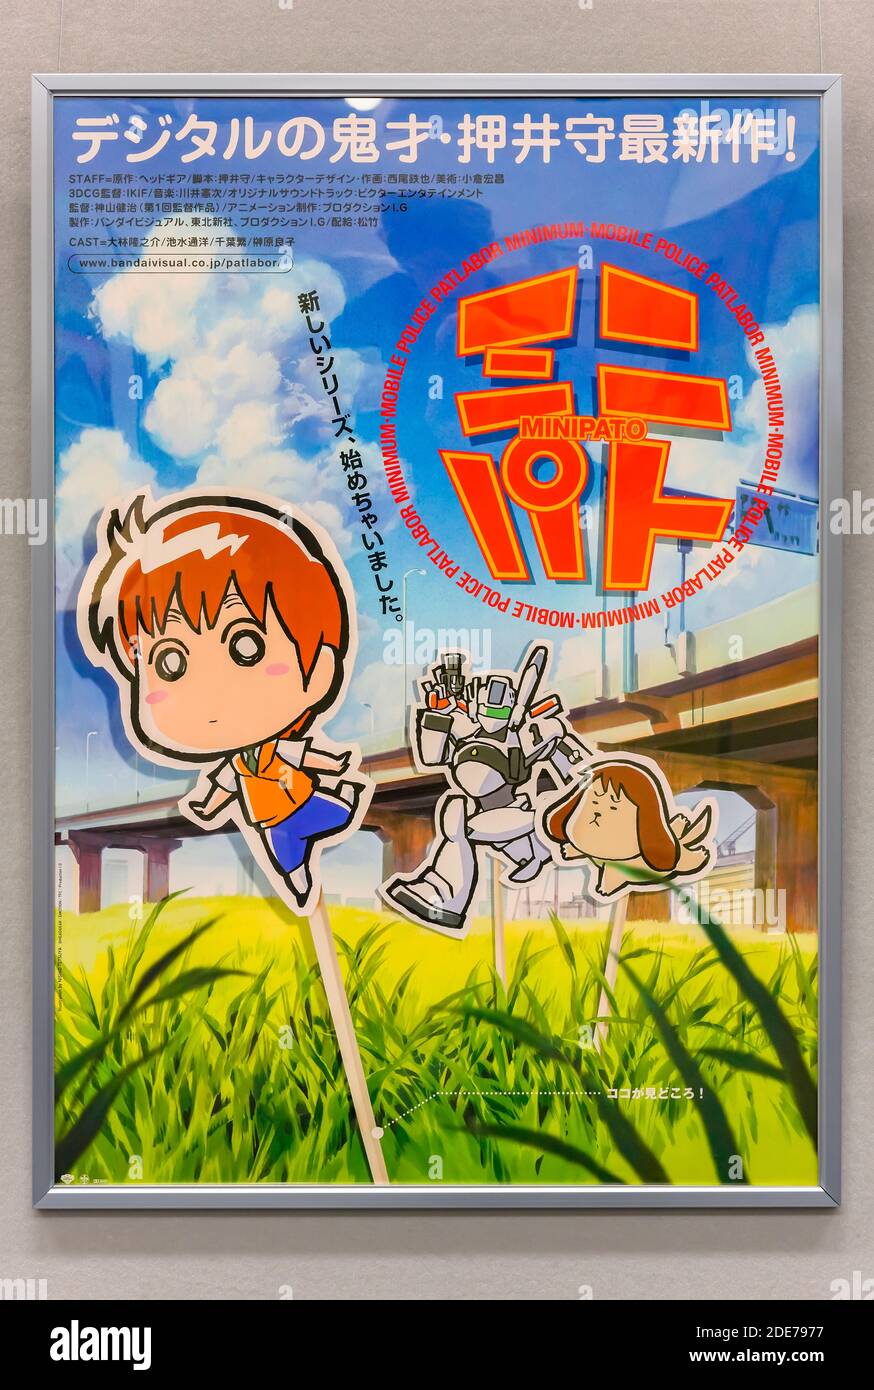 tokyo, giappone - novembre 16 2019: Manifesto pubblicitario di film di anime giapponesi del film di fantascienza animato di Minibato Minipato Minimum Mobile Police Patlab Foto Stock